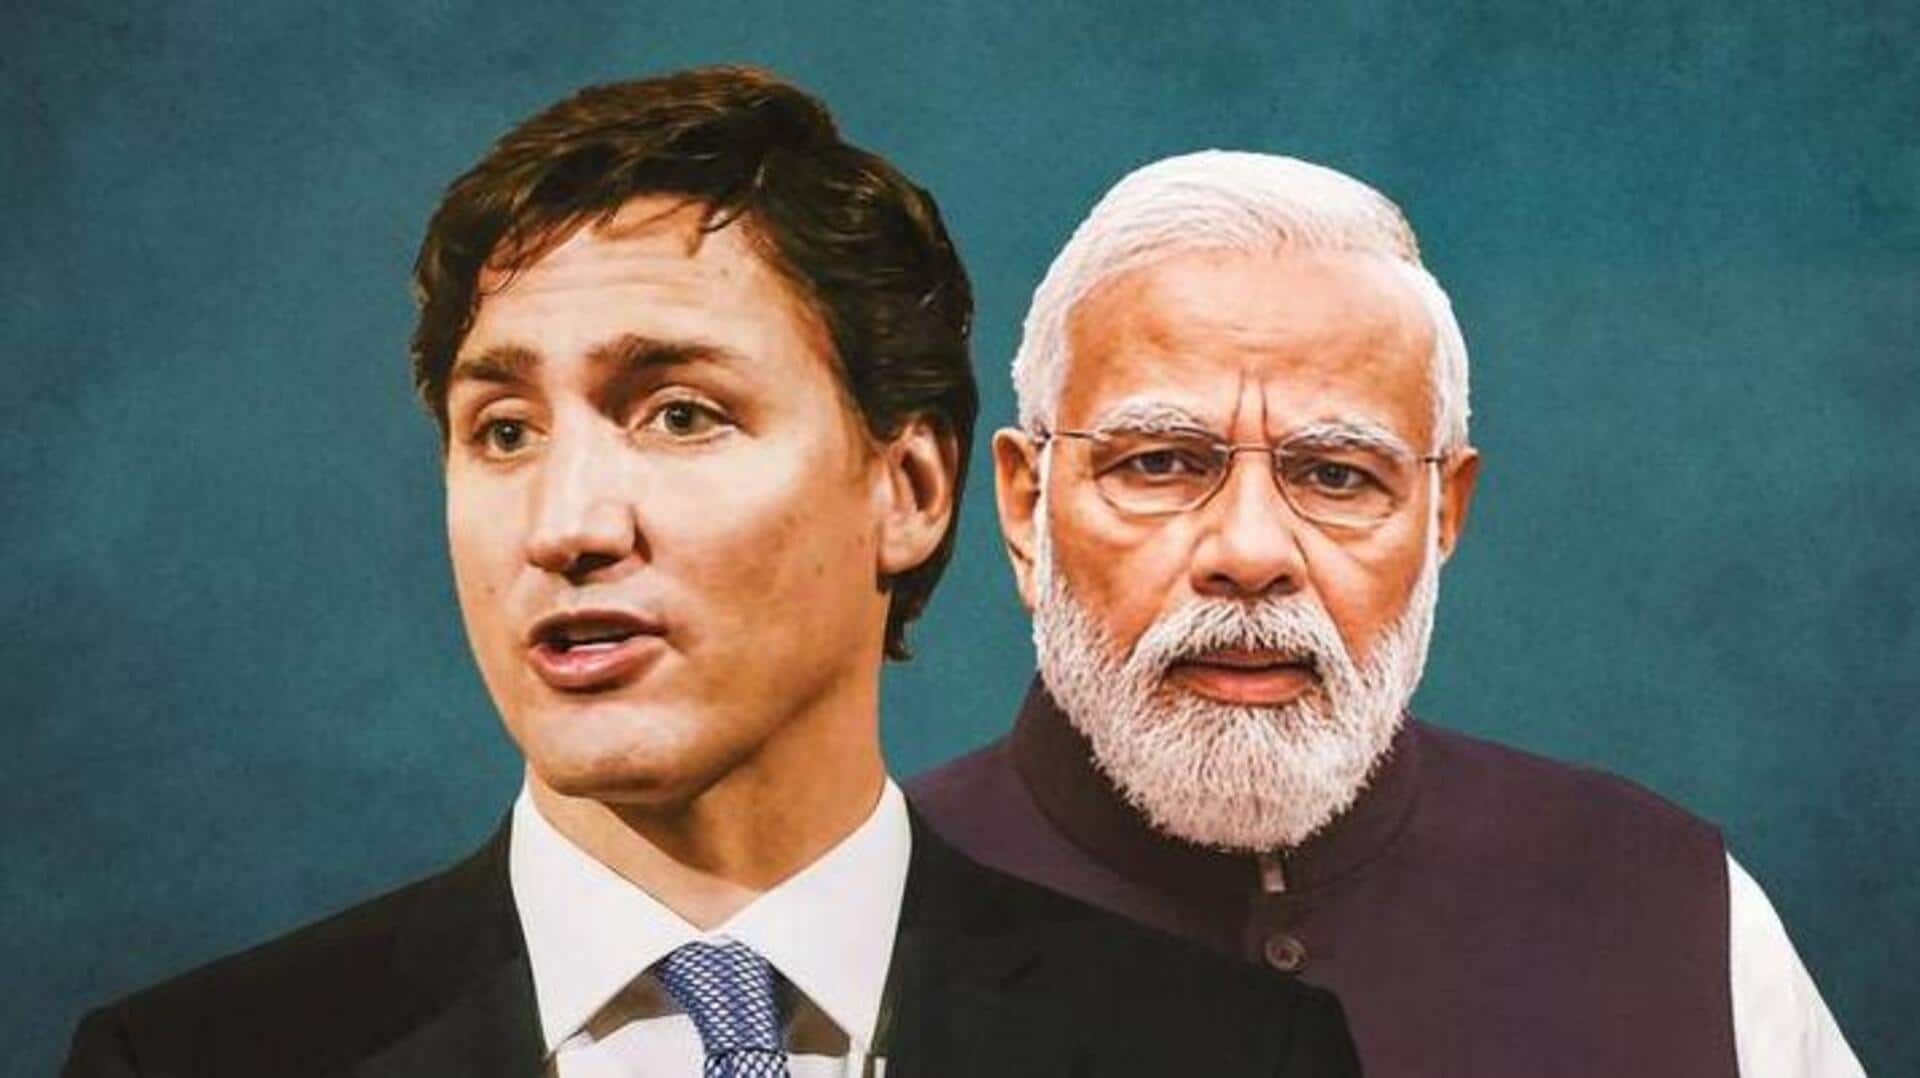 भारत ने कनाडाई चुनावों में हस्तक्षेप के आरोपों का खंडन किया, कहा- ये हमारी नीति नहीं